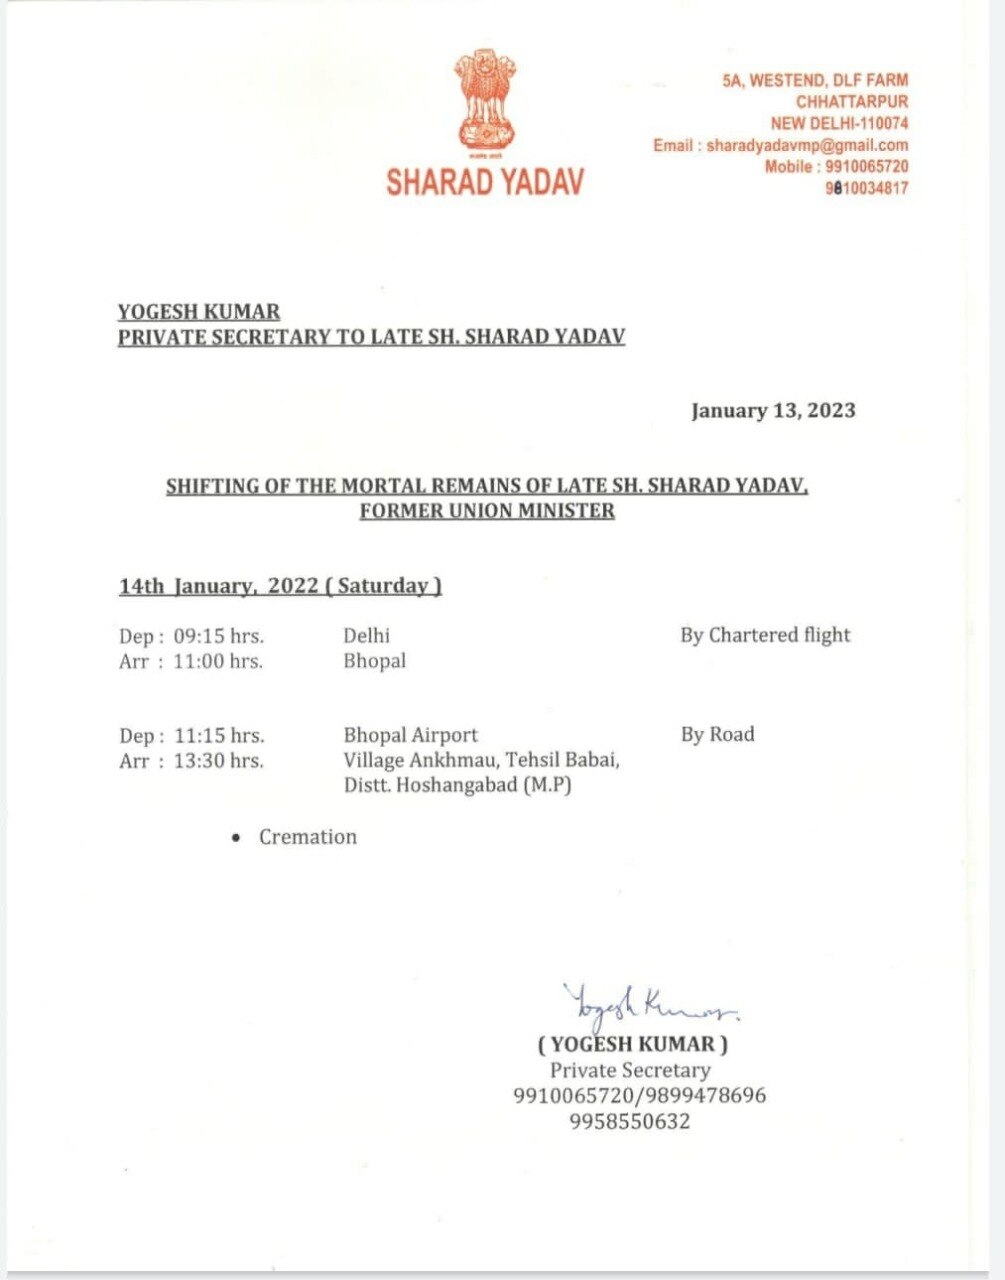 Sharad Yadav Death: शनिवार को पैतृक गांव अंखमऊ में होगा शरद यादव का अंतिम संस्कार, सुबह दिल्ली से जाएगा पार्थिव शरीर